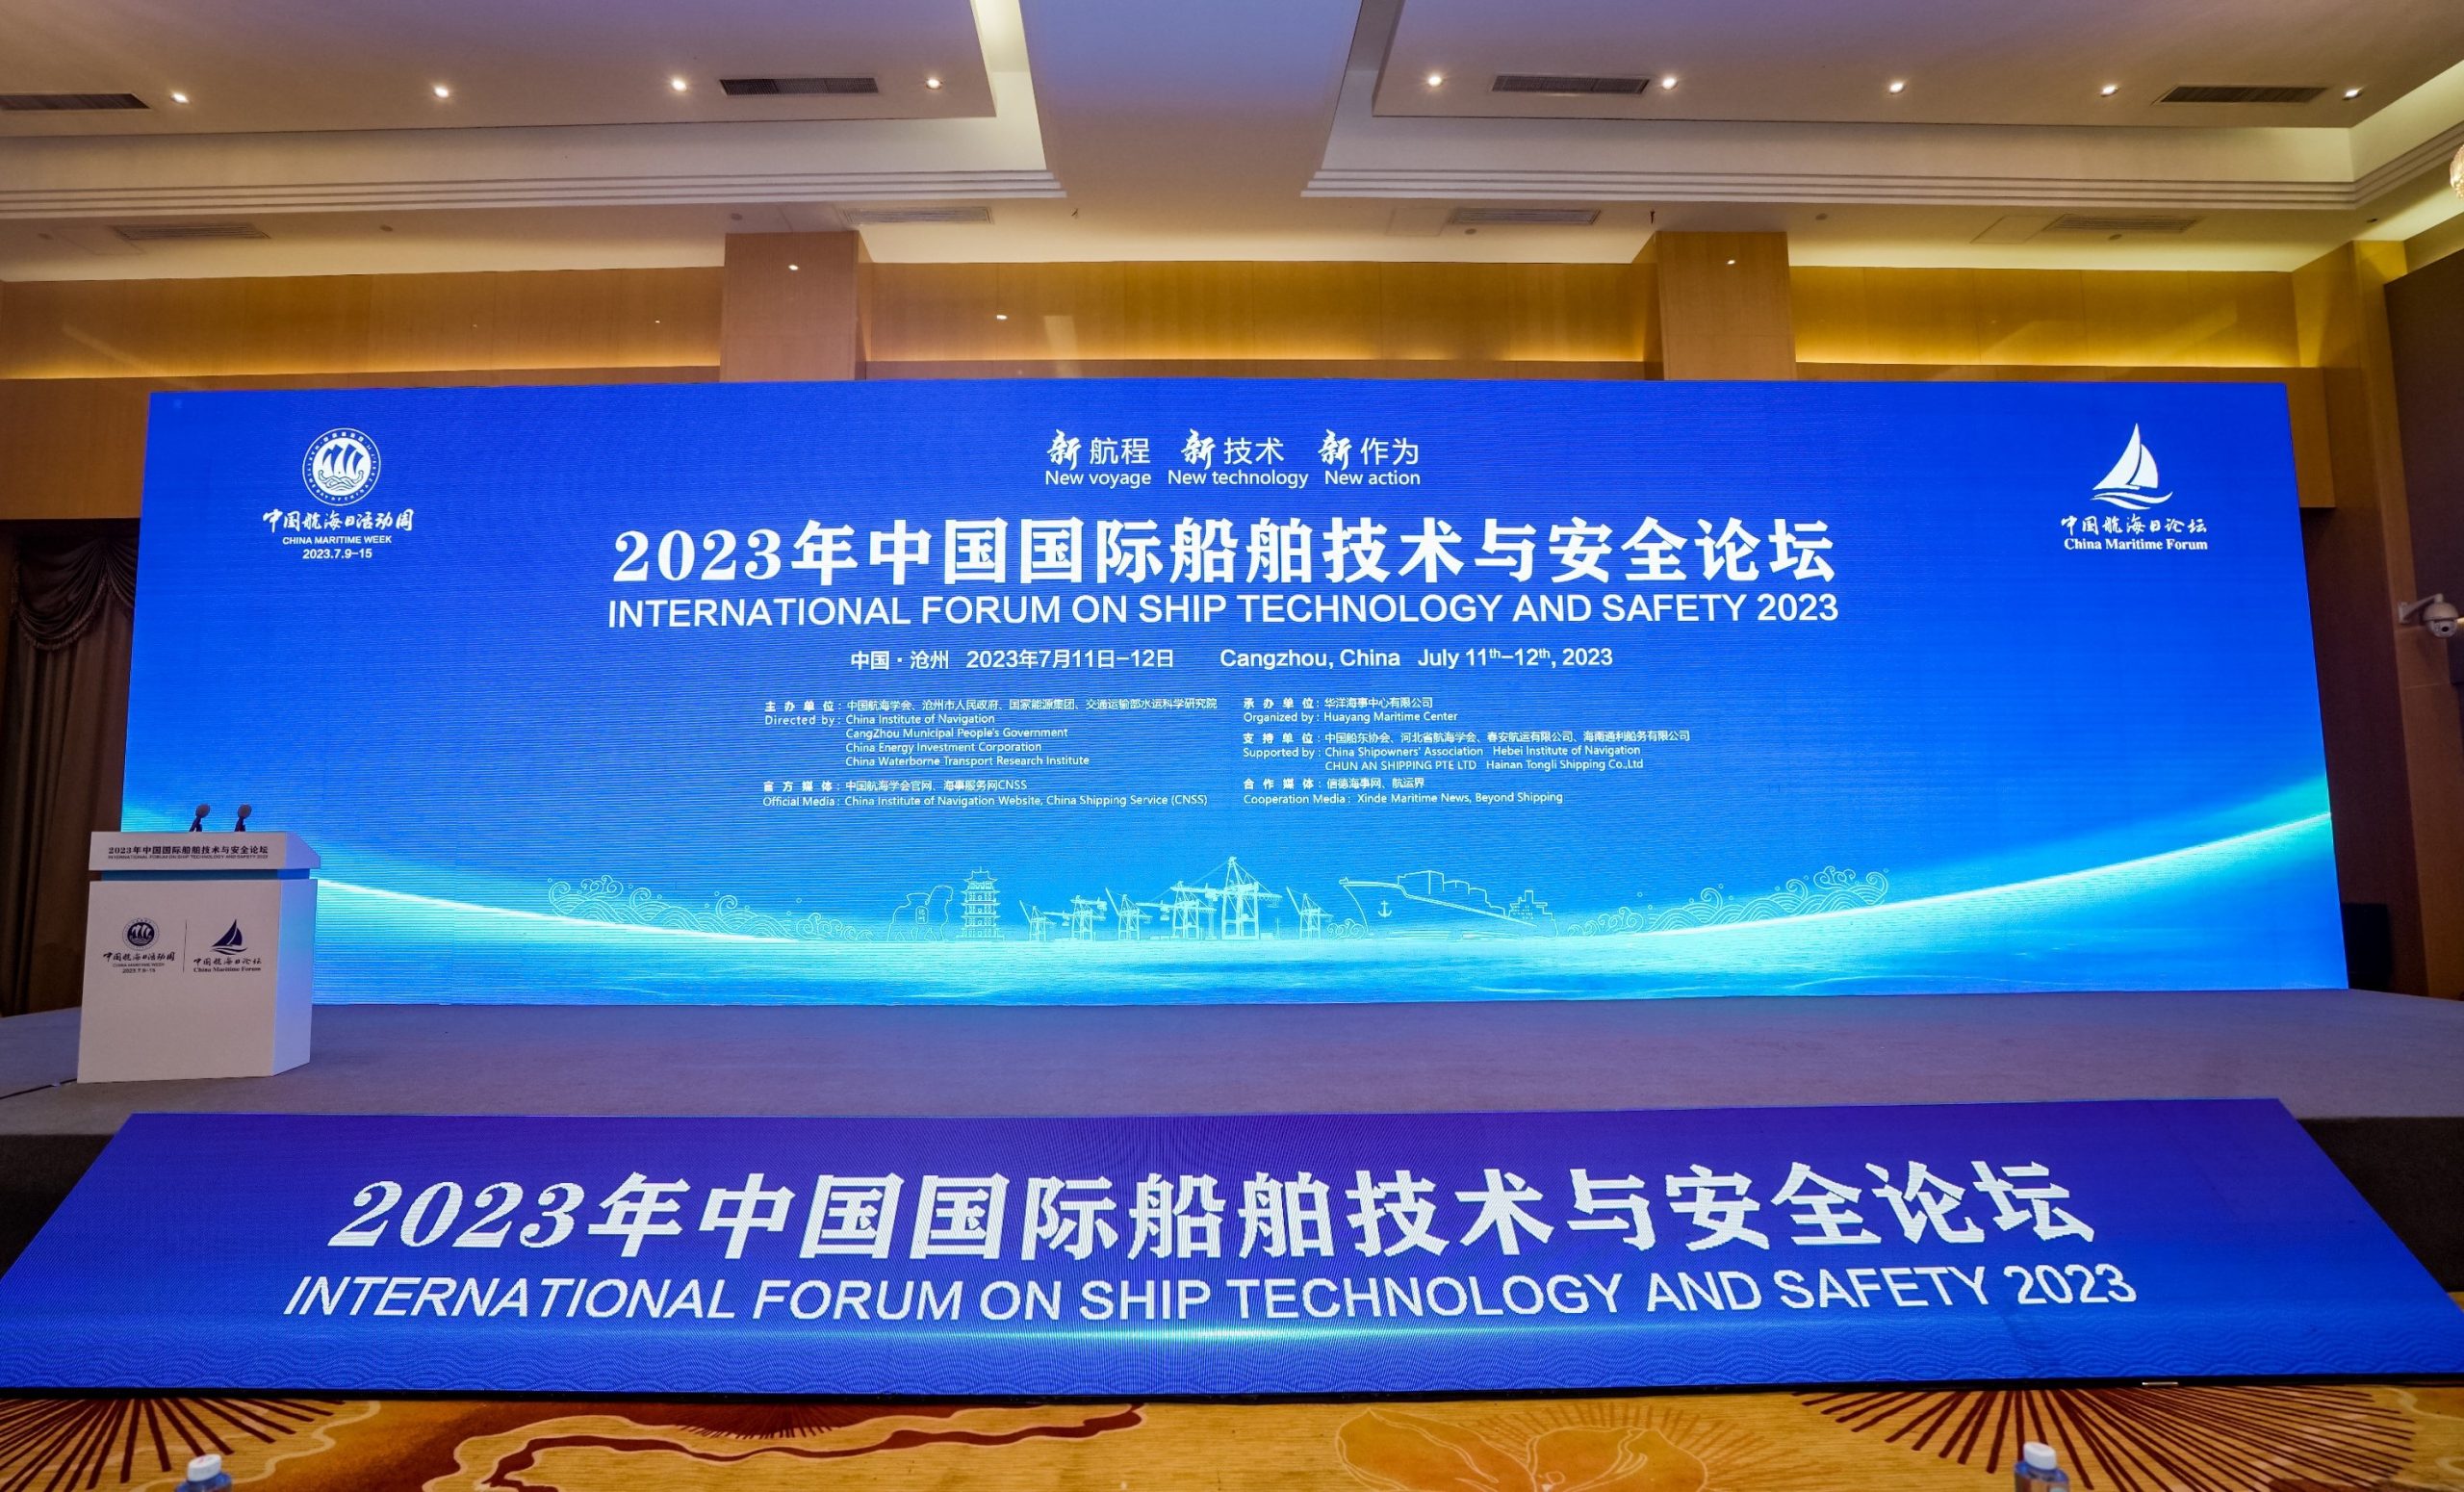 贝仕参加2023年中国国际船舶技术与安全论坛并发言